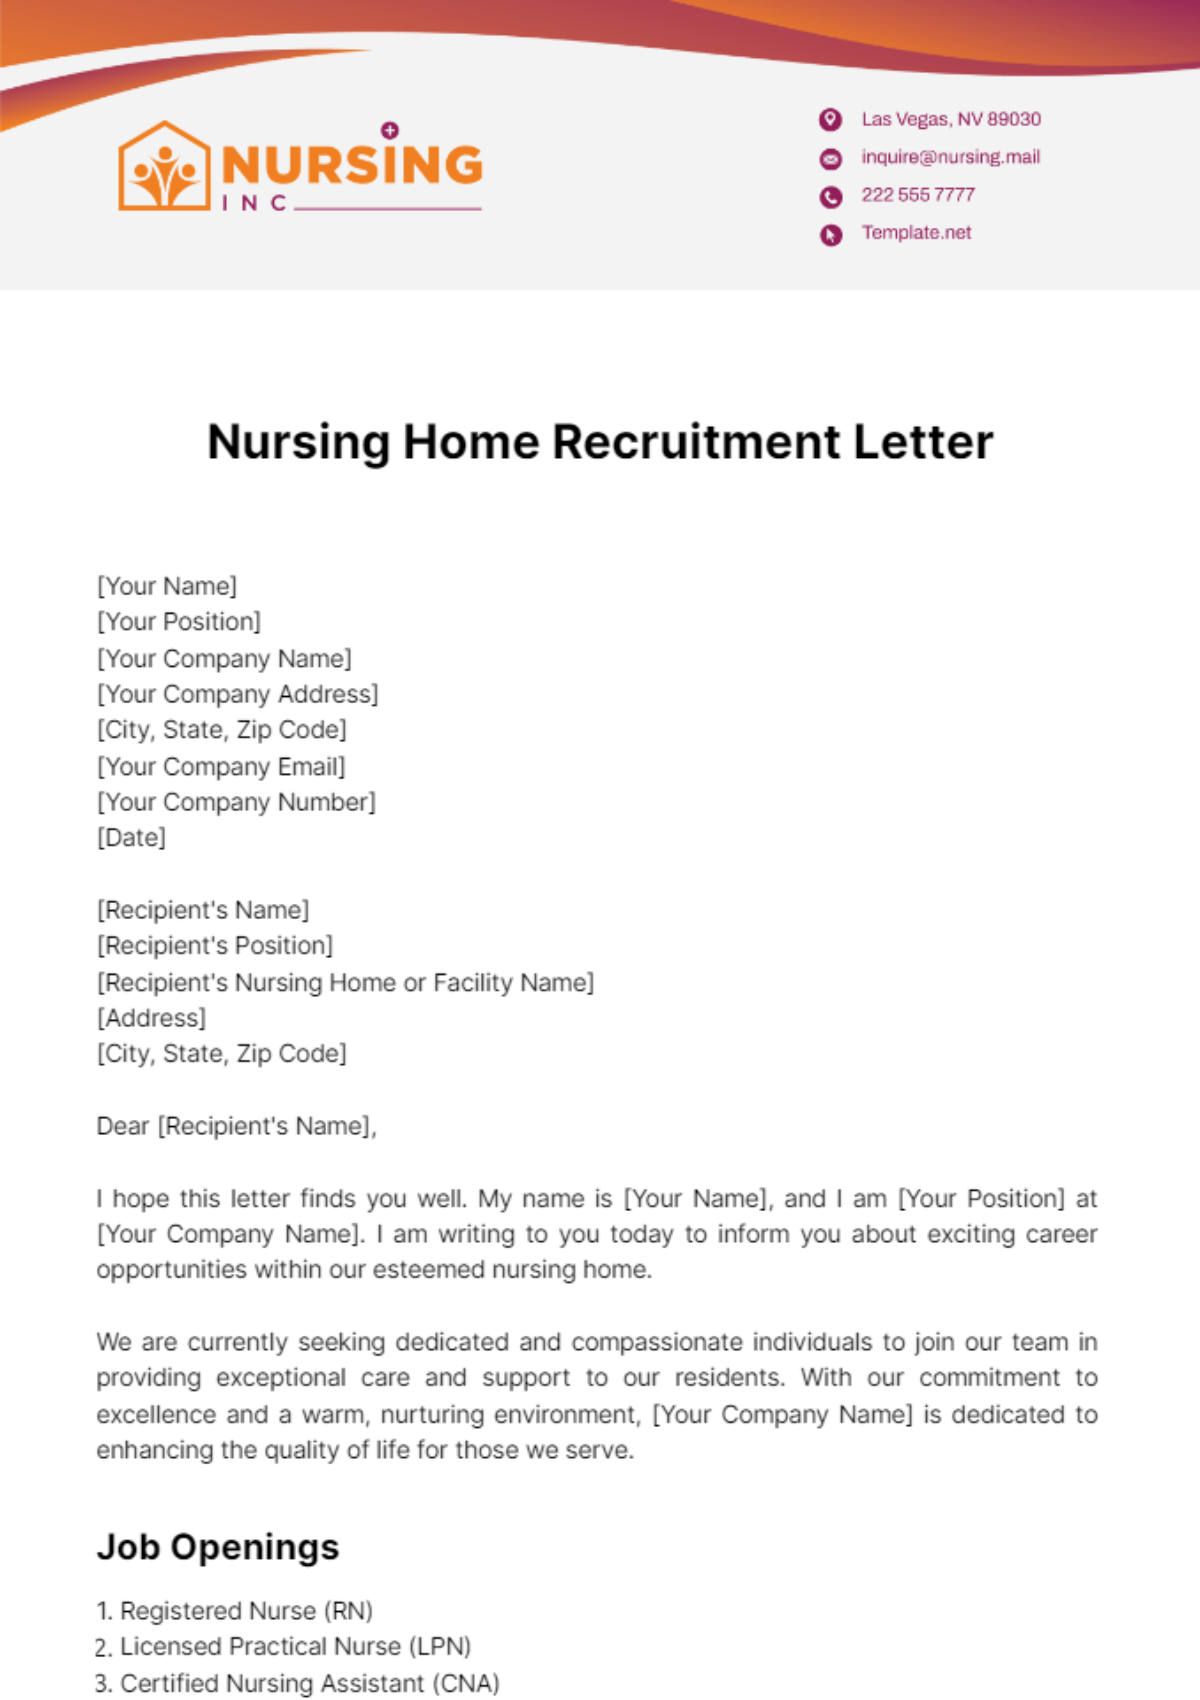 Nursing Home Recruitment Letter Template